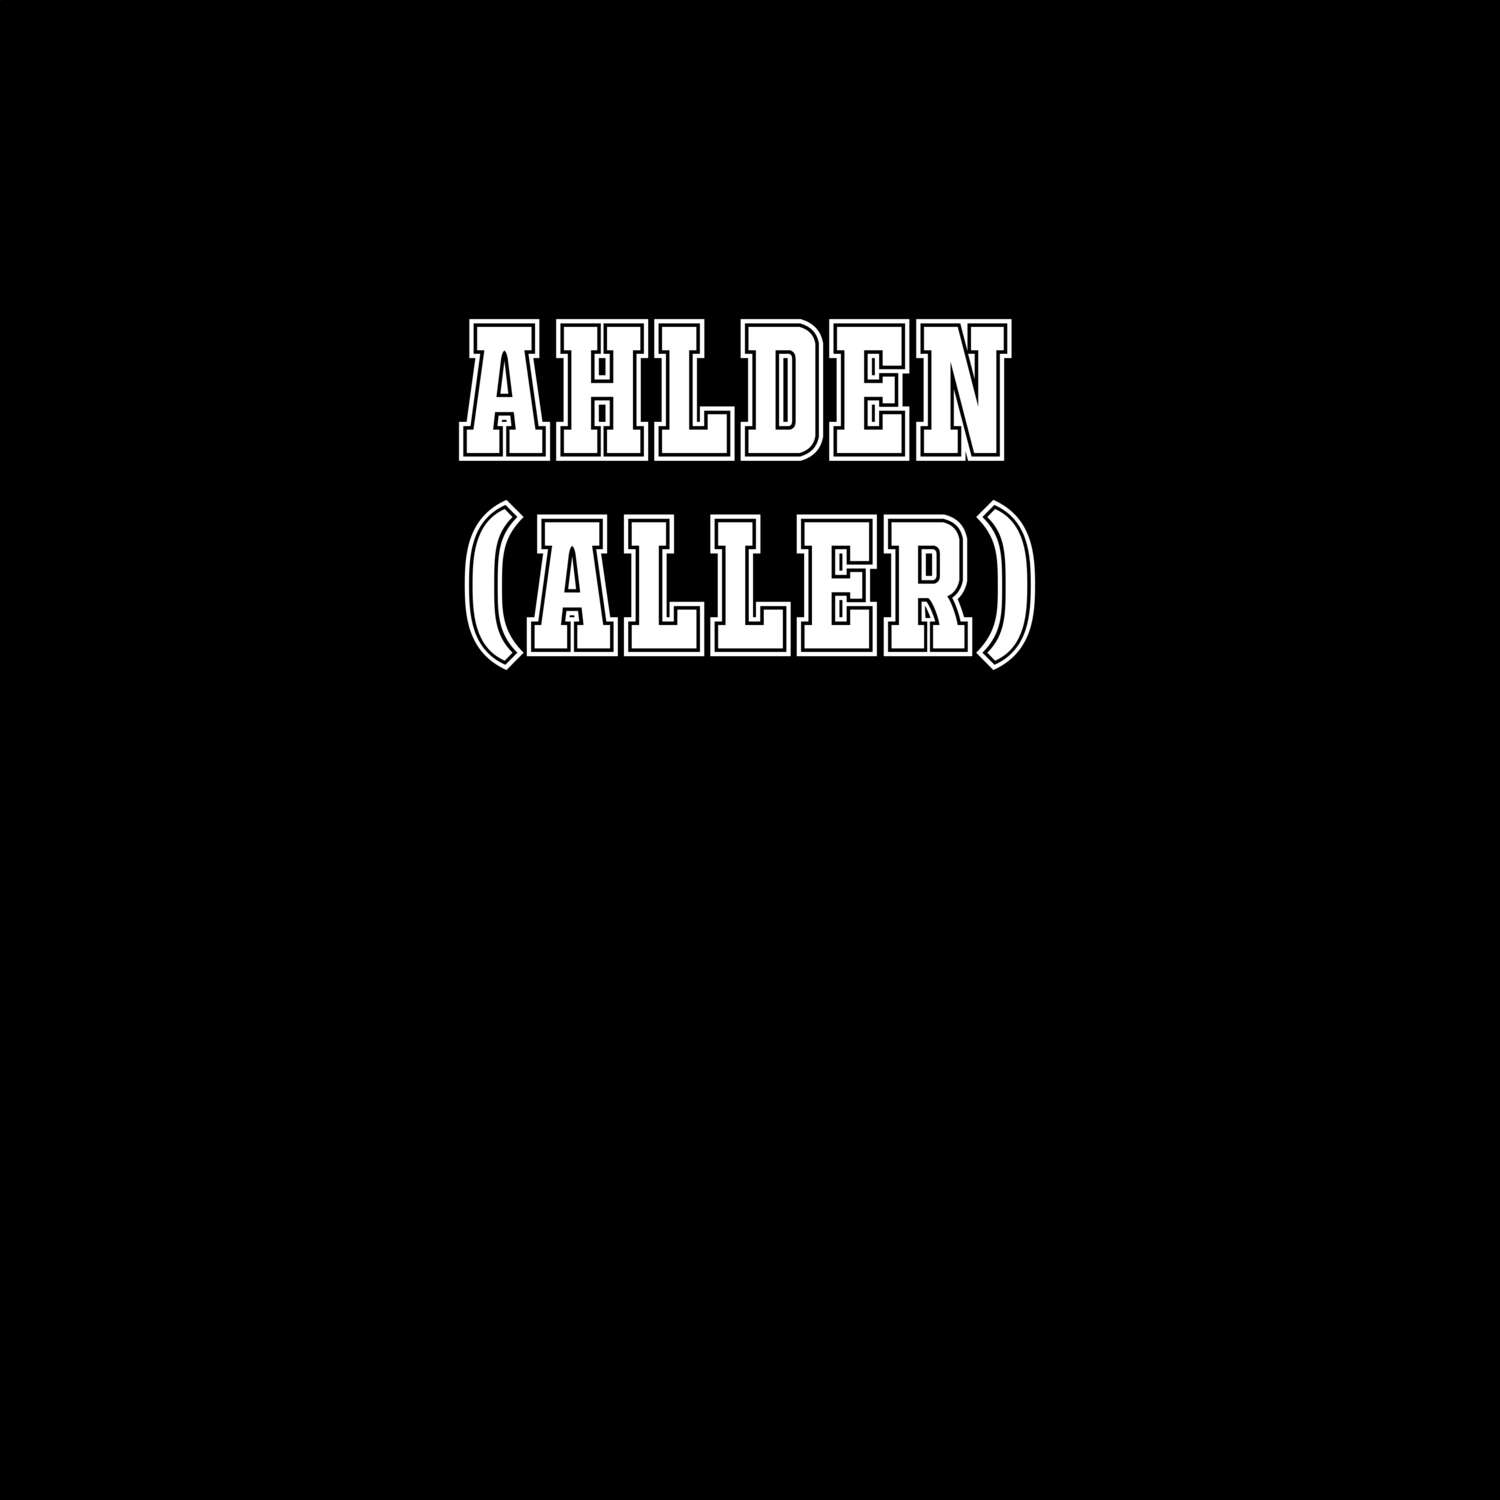 Ahlden (Aller) T-Shirt »Classic«